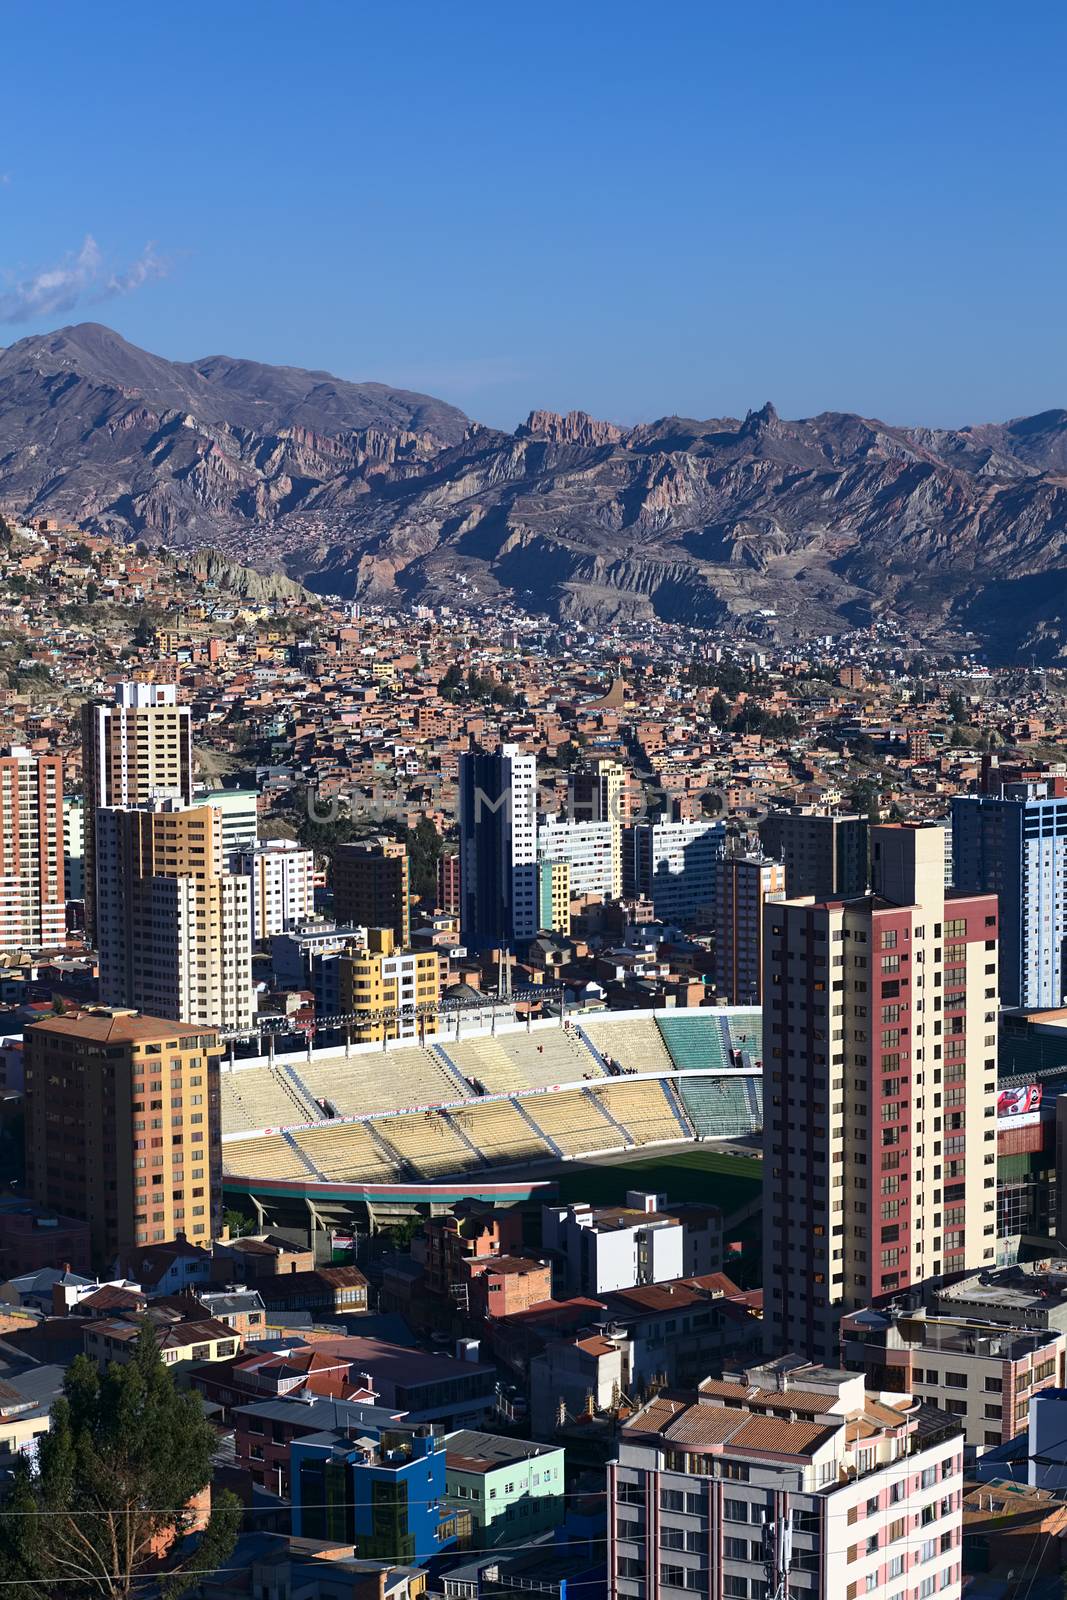 Stadium Estadio Hernando Siles in La Paz, Bolivia by ildi